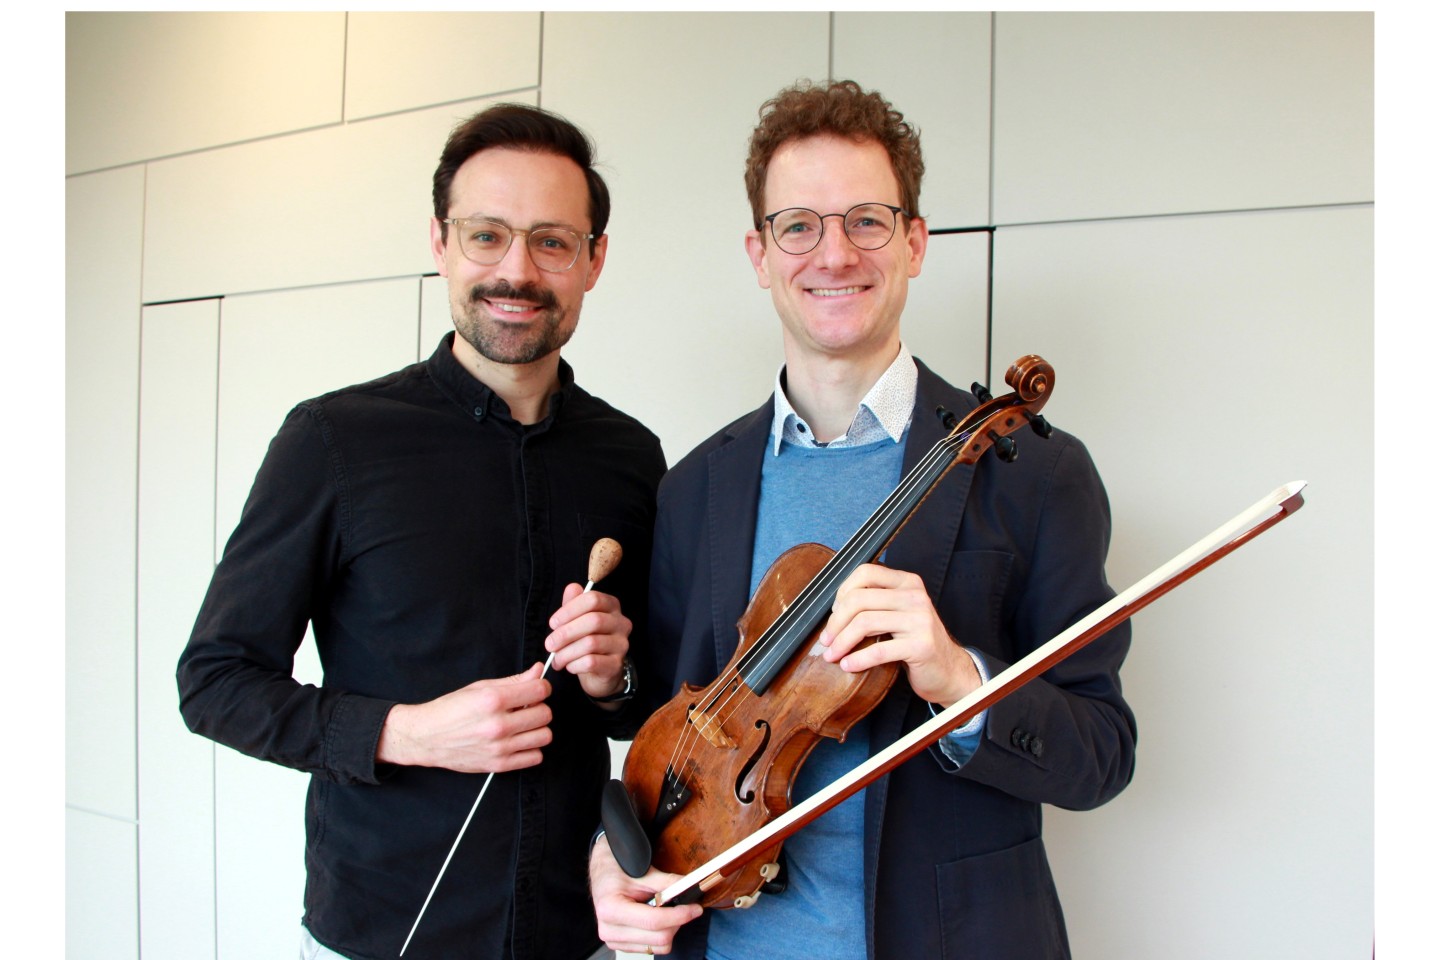 Bildunterschrift: Dirigent Gerald Mair (links) und Solist Jonathan David Misch freuen sich auf ein abwechslungsreiches Programm bei den Sinfoniekonzerten. Mit „Minimal music“ im Violinkonzert steht un